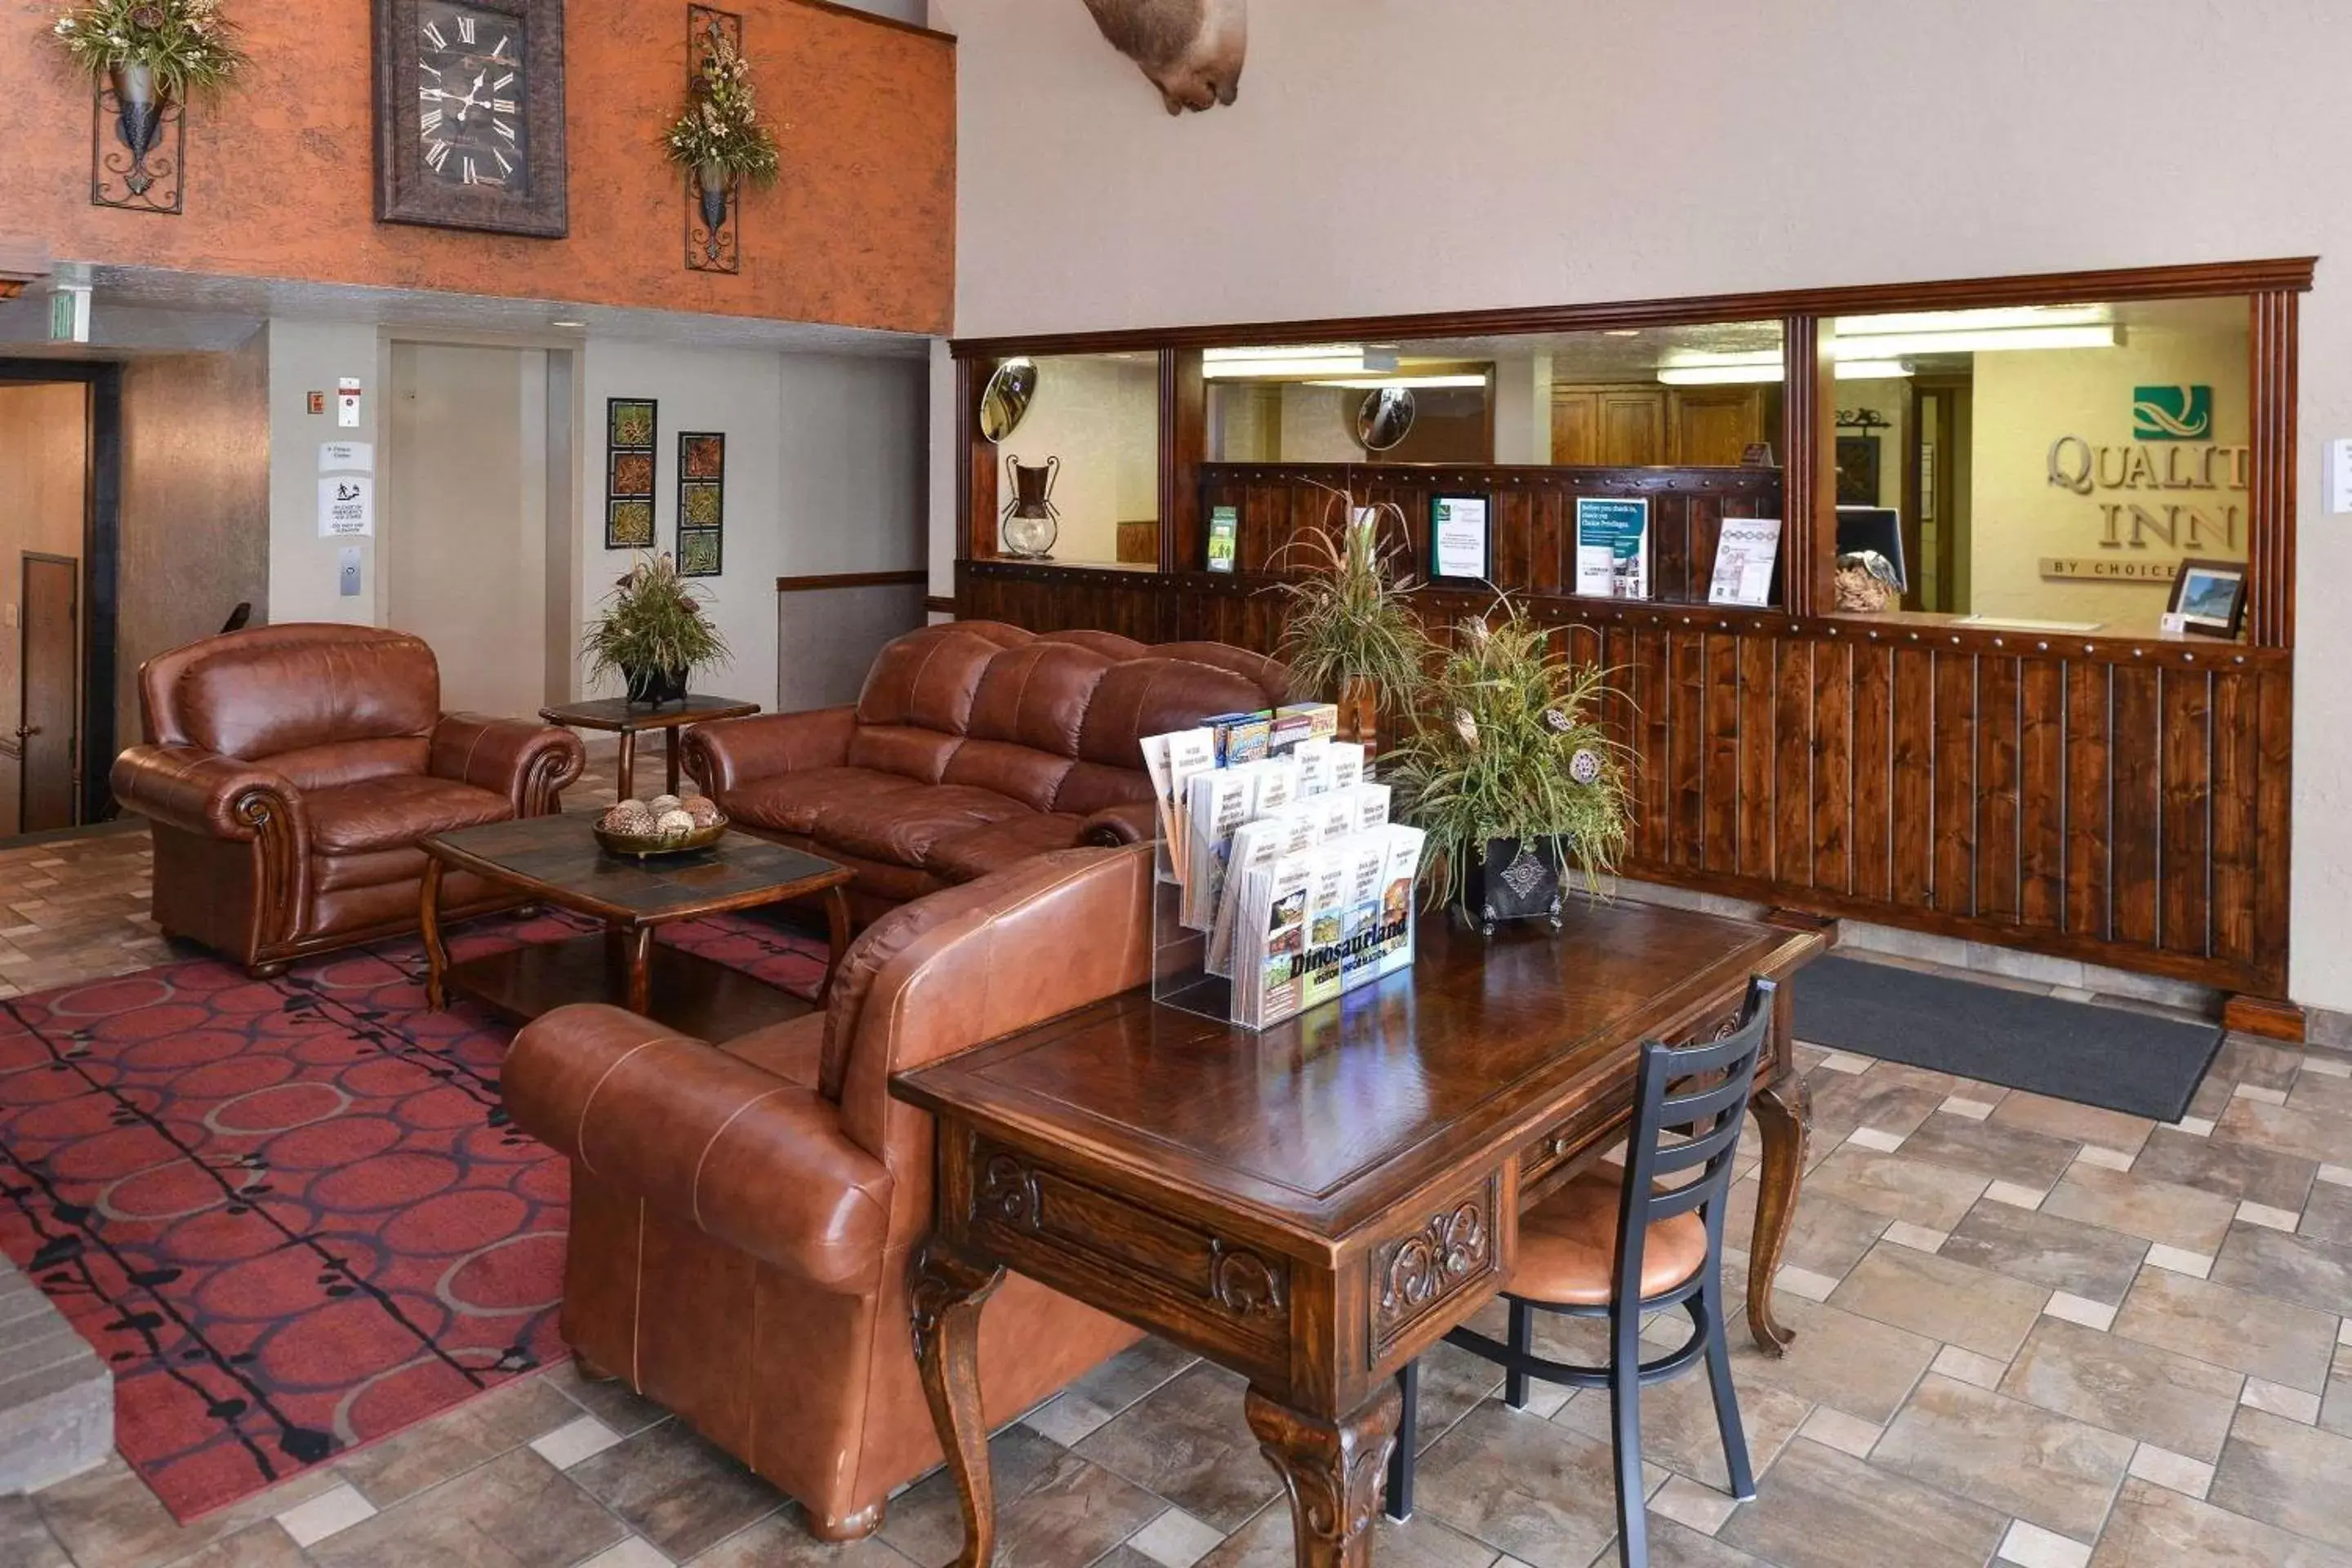 Lobby or reception, Lobby/Reception in Quality Inn Vernal near Dinosaur National Monument